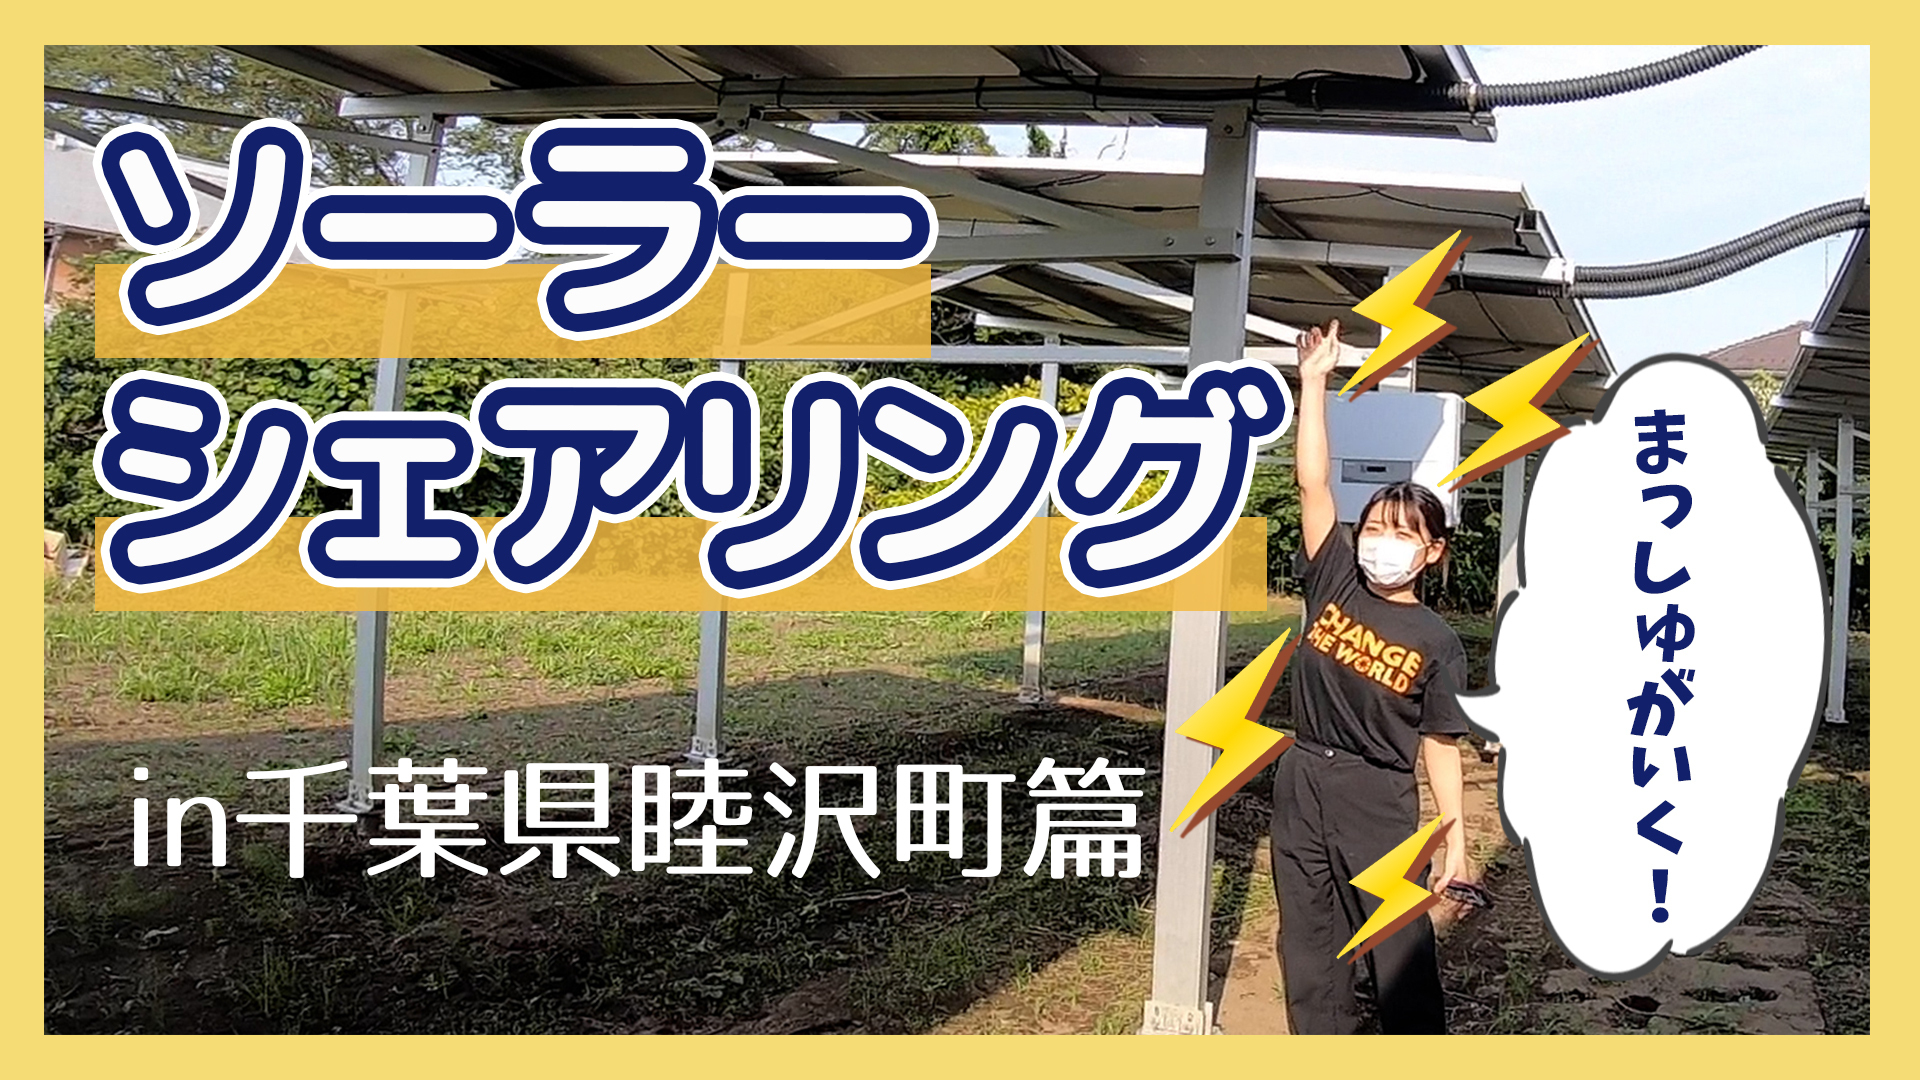 【まっしゅがいく！太陽光発電所ツアー】 ソーラーシェアリング in 千葉県睦沢町篇を公開！